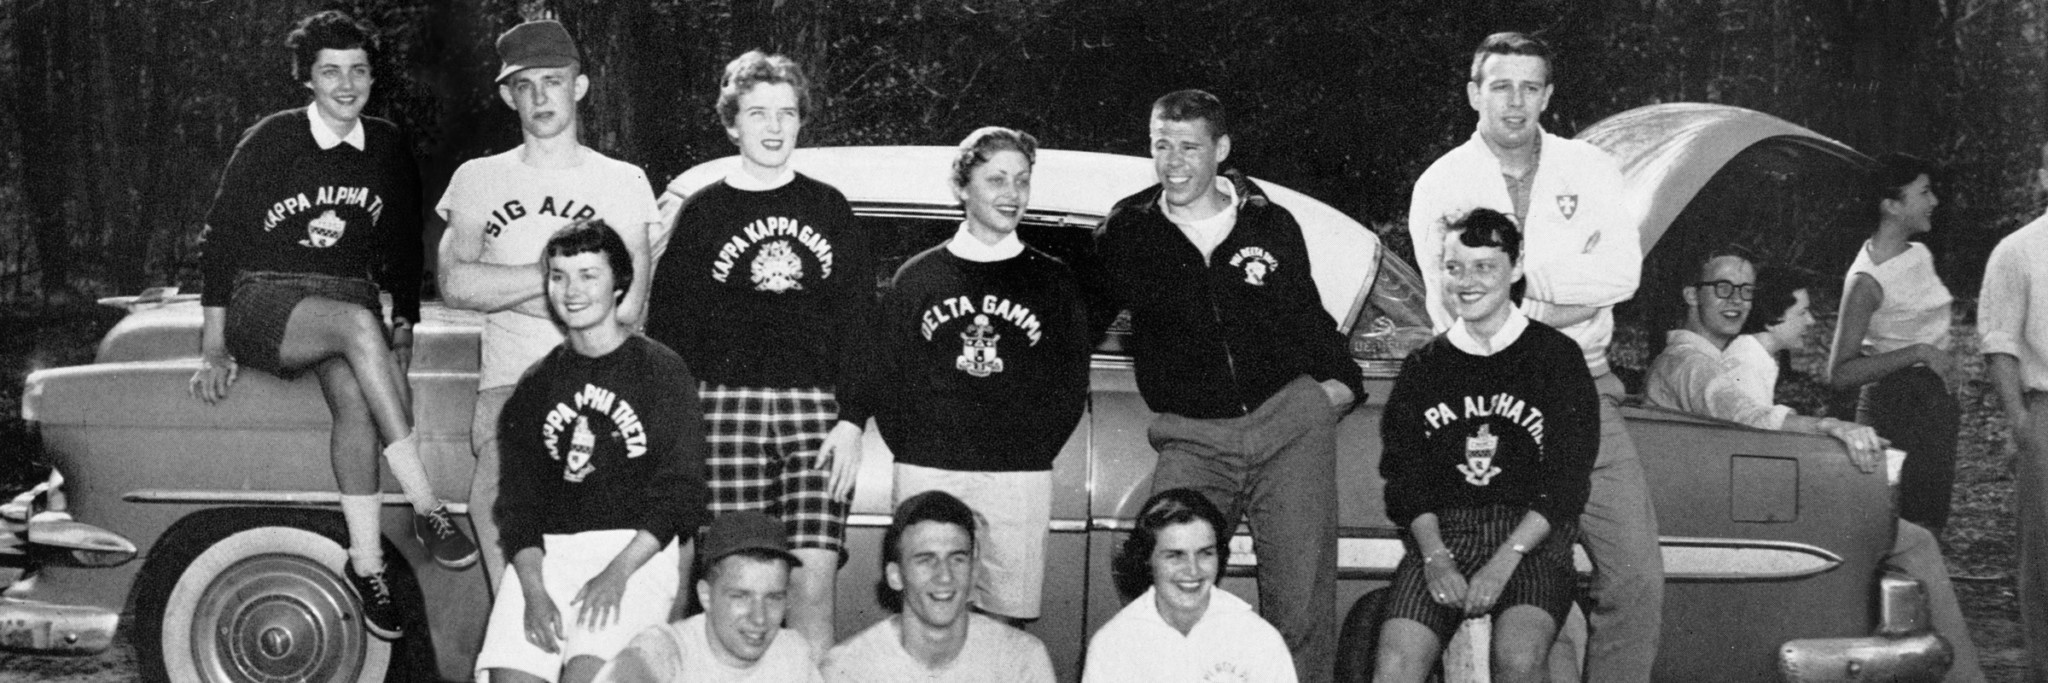 Alumni Society - That Old '54 Chevy